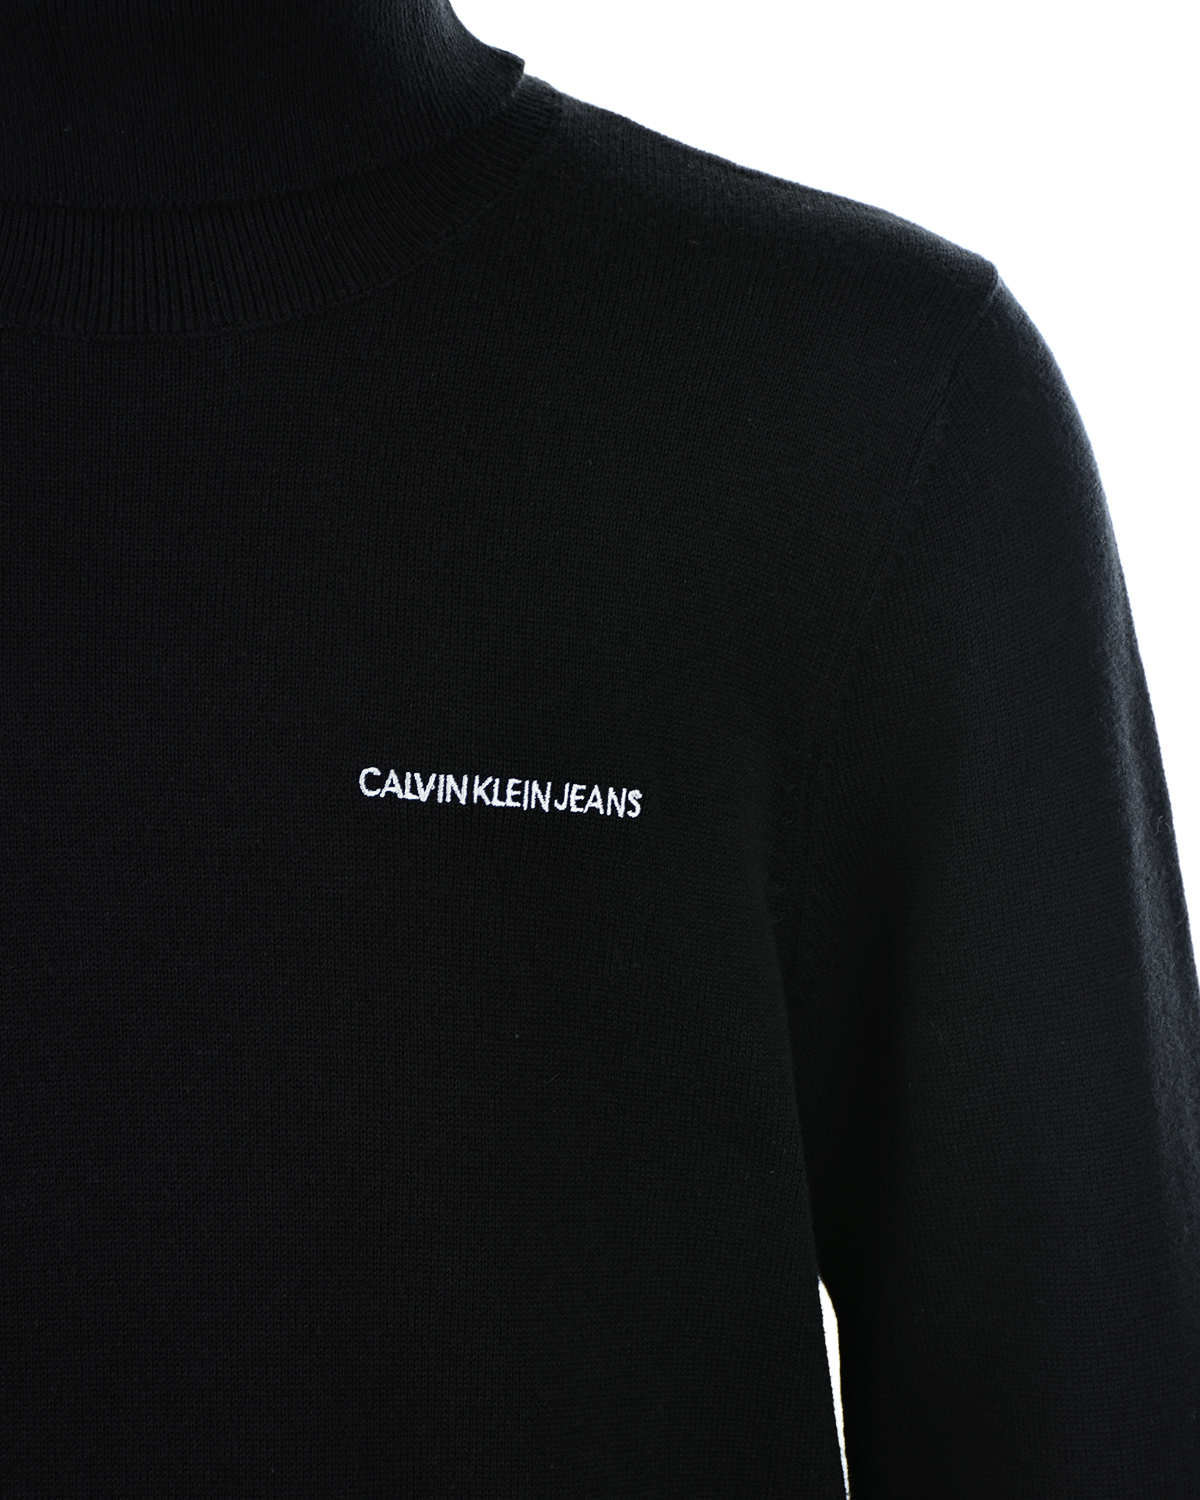 Черная водолазка с белым логотипом Calvin Klein детская, размер 152, цвет нет цвета - фото 3